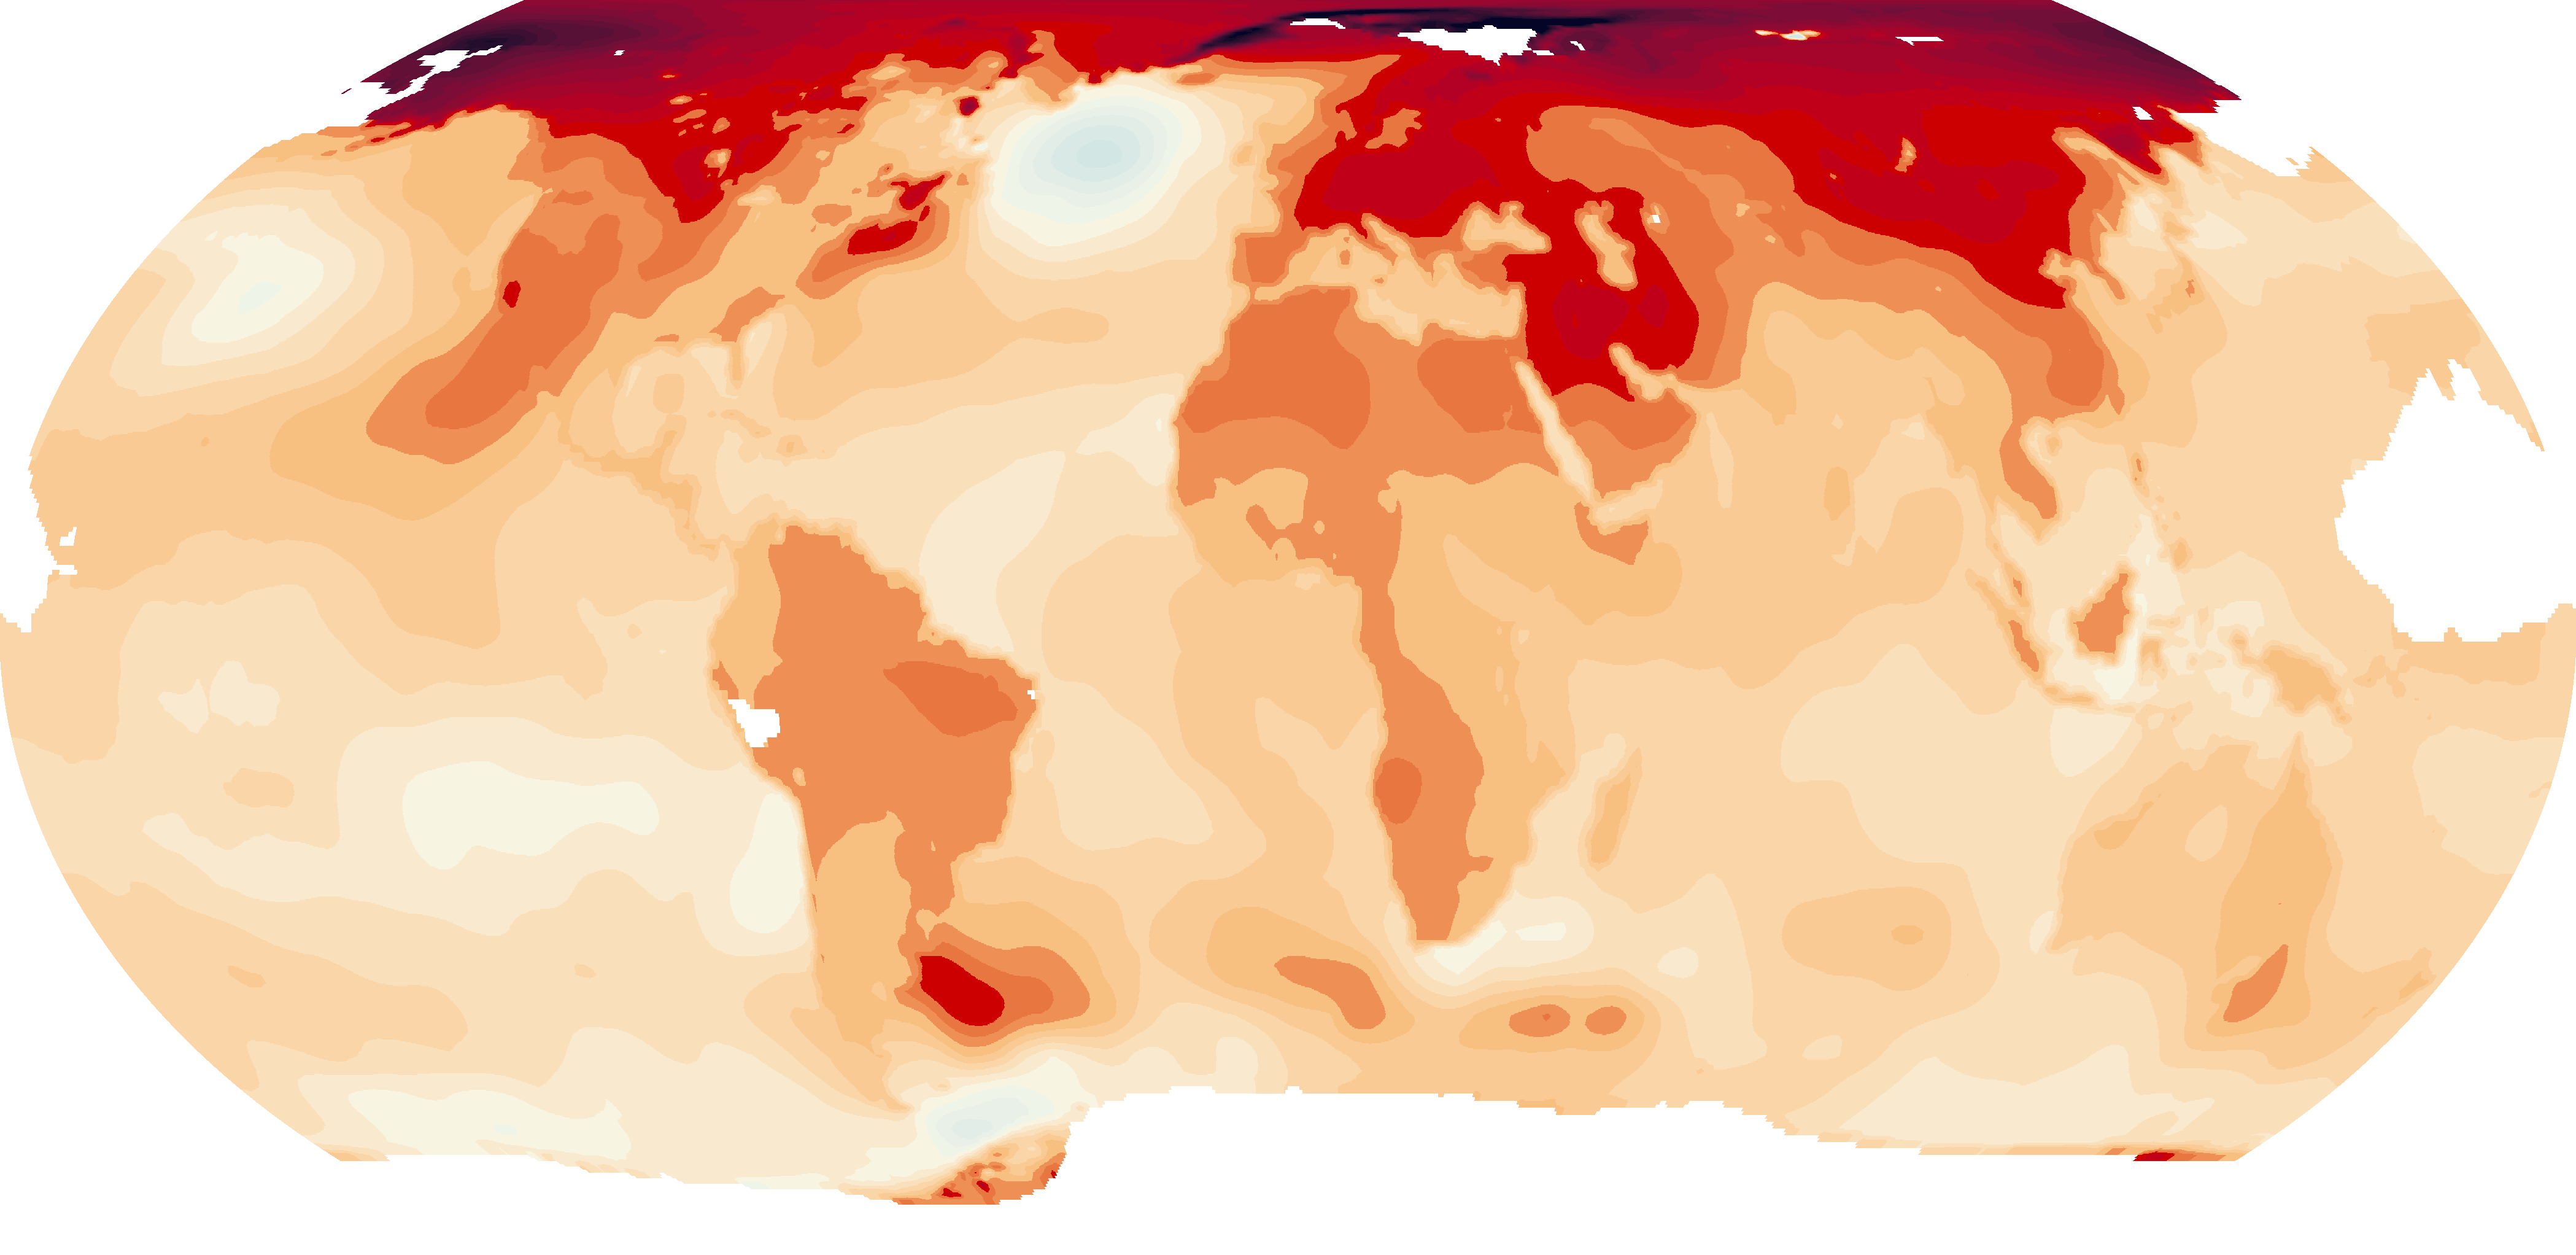 Questa estate registrati centinaia di record di temperatura in tutto il mondo